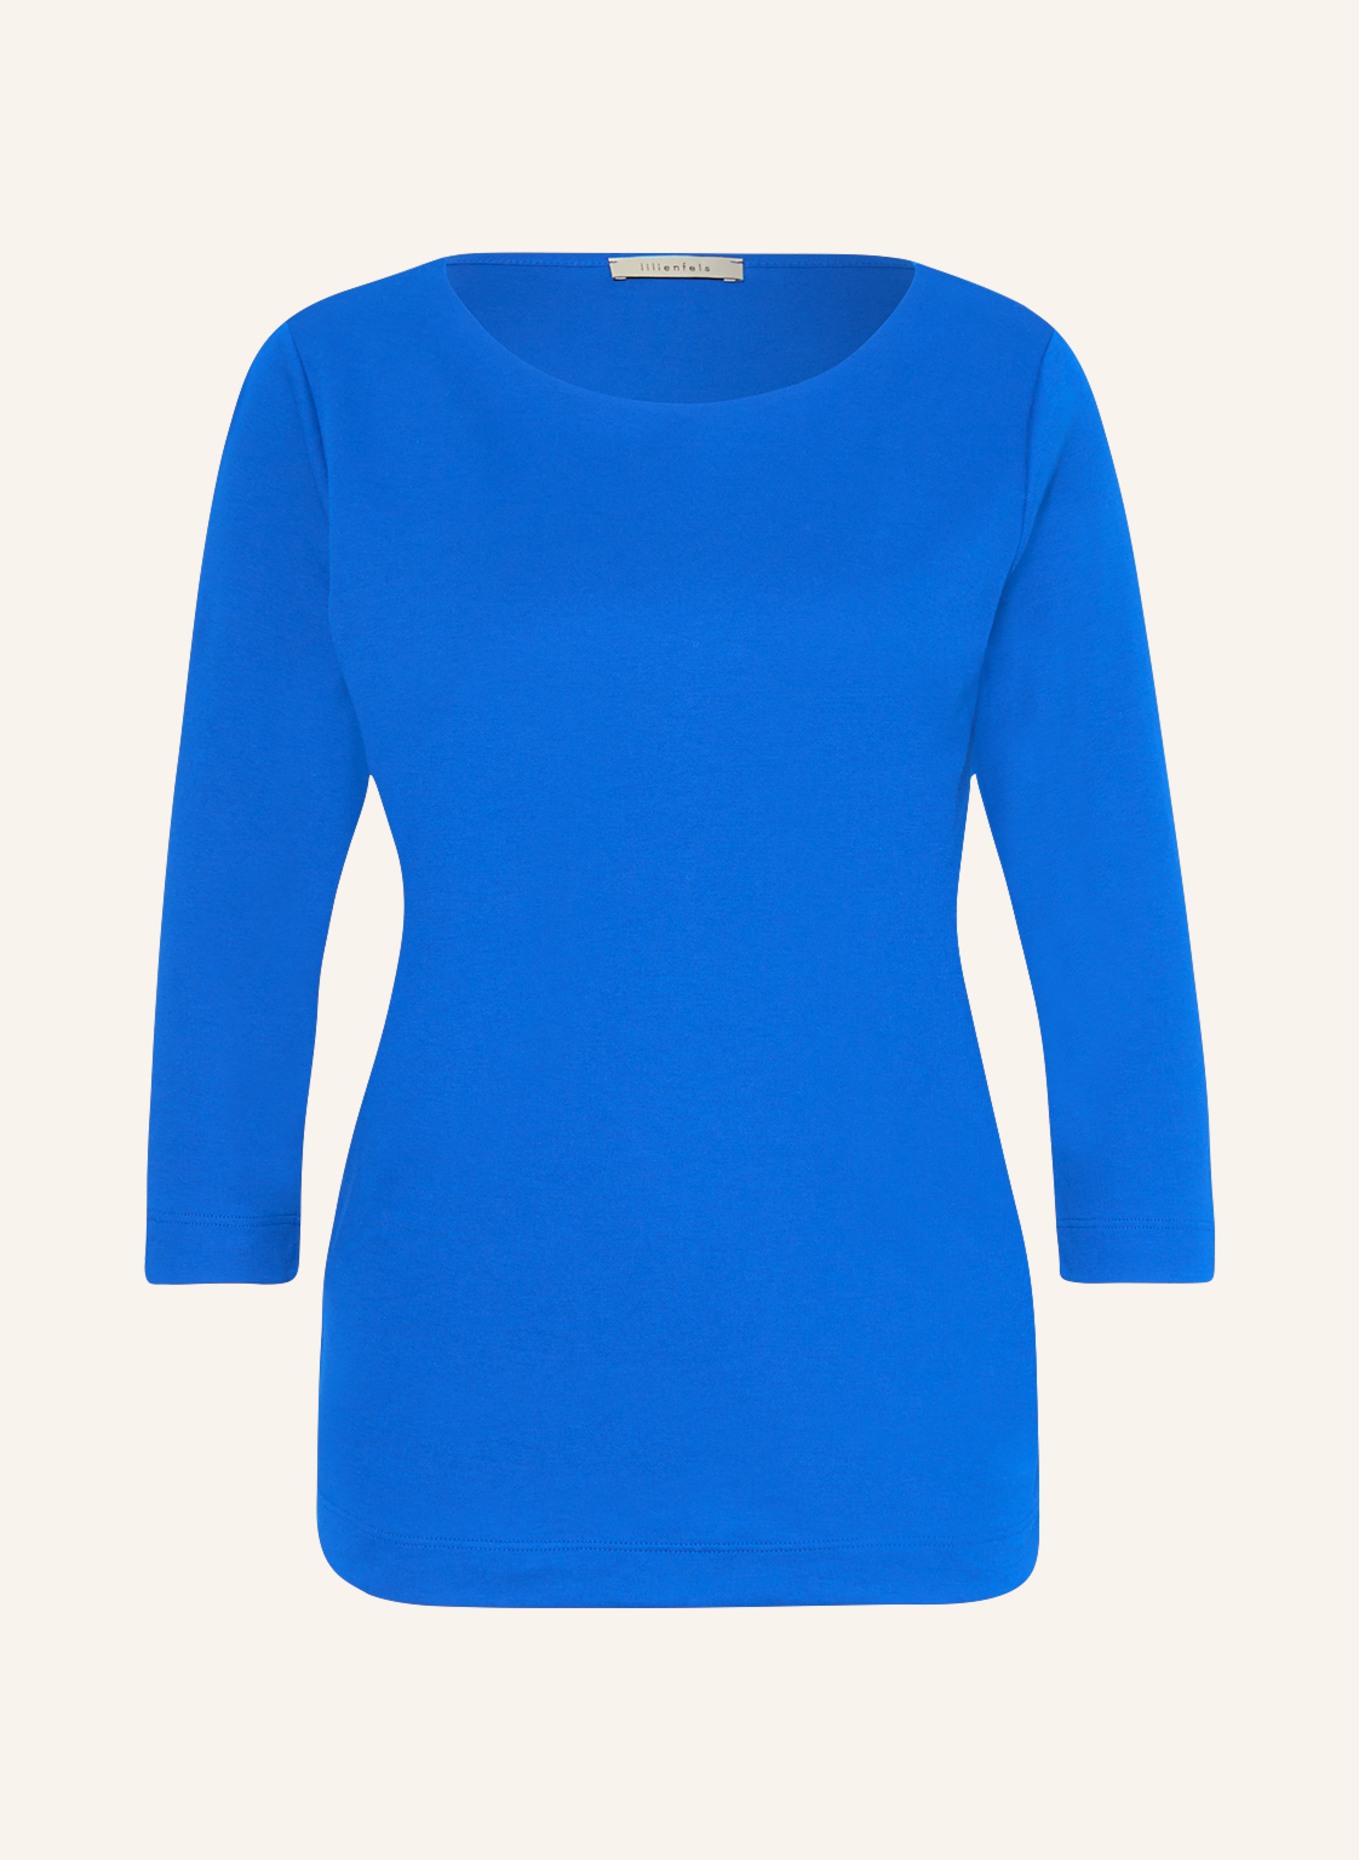 lilienfels Shirt mit 3/4-Arm, Farbe: BLAU (Bild 1)